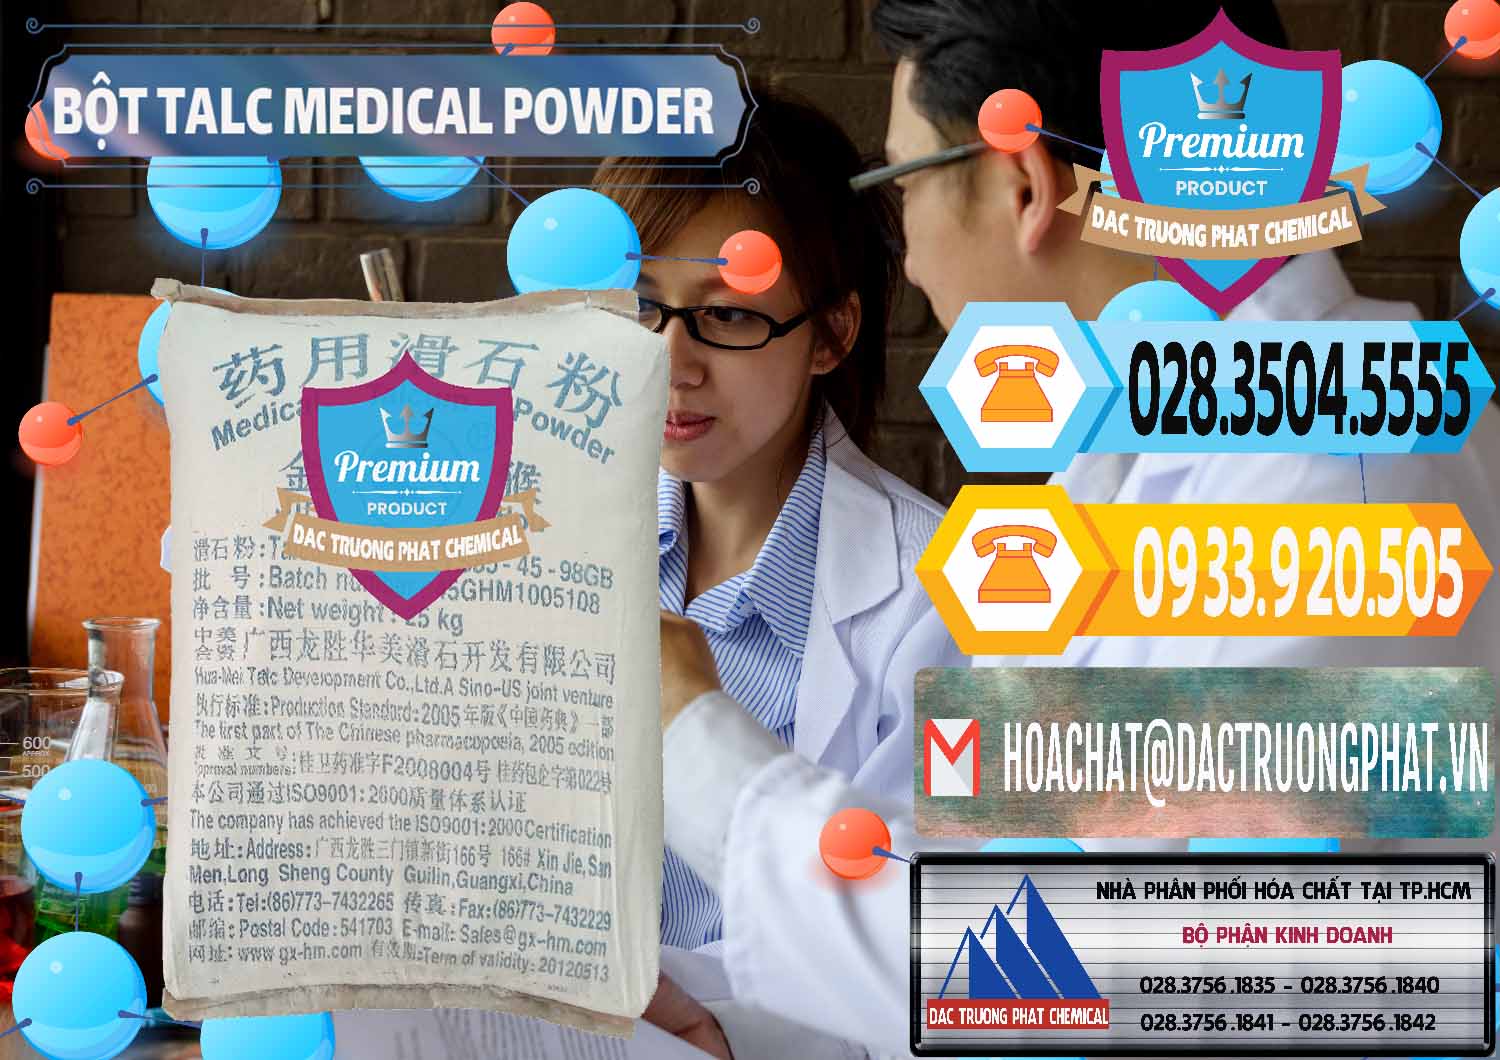 Đơn vị phân phối & bán Bột Talc Medical Powder Trung Quốc China - 0036 - Cty chuyên cung ứng _ phân phối hóa chất tại TP.HCM - hoachattayrua.net